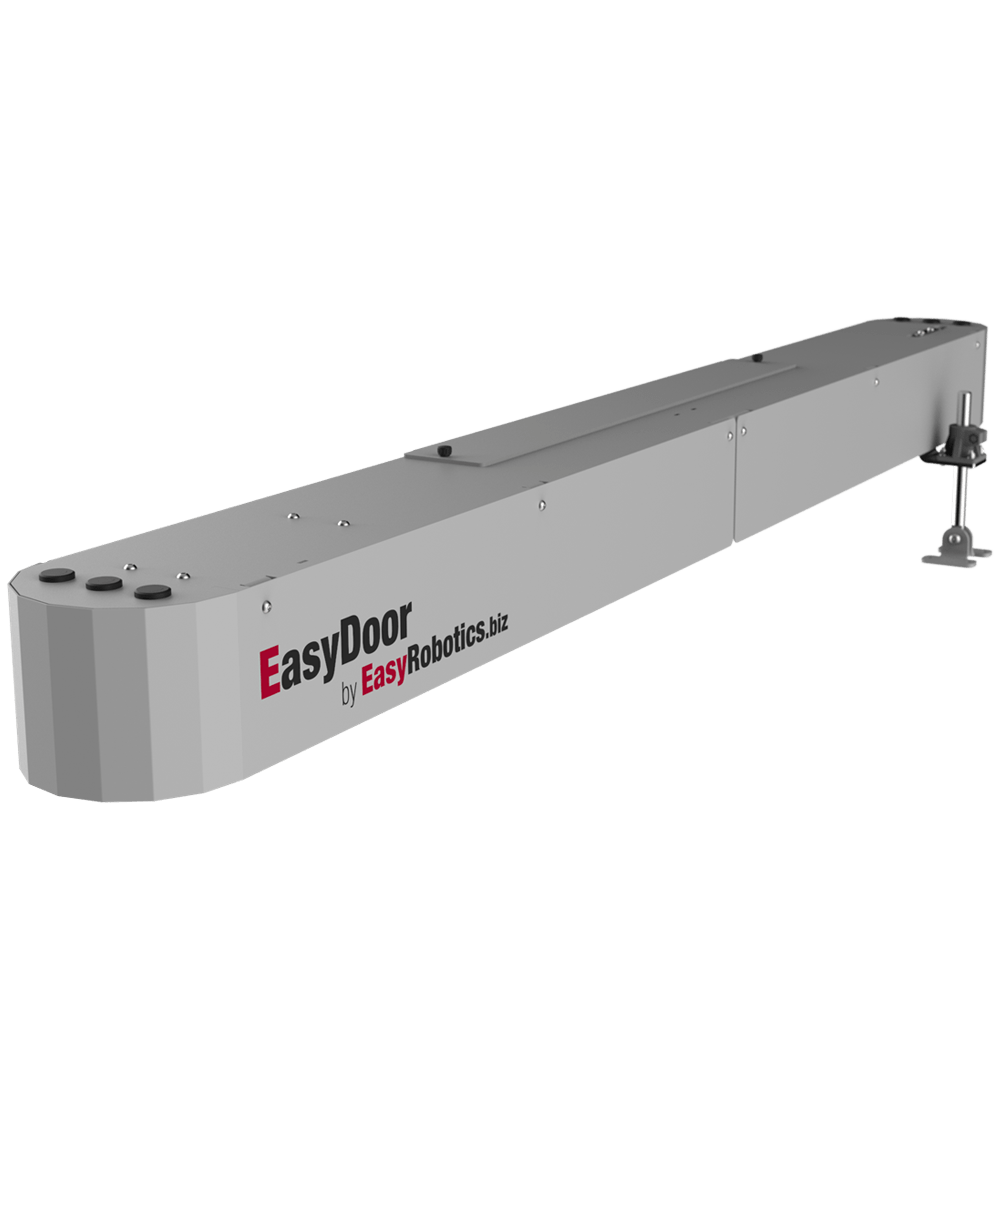 Automatic CNC door opener EasyDoor